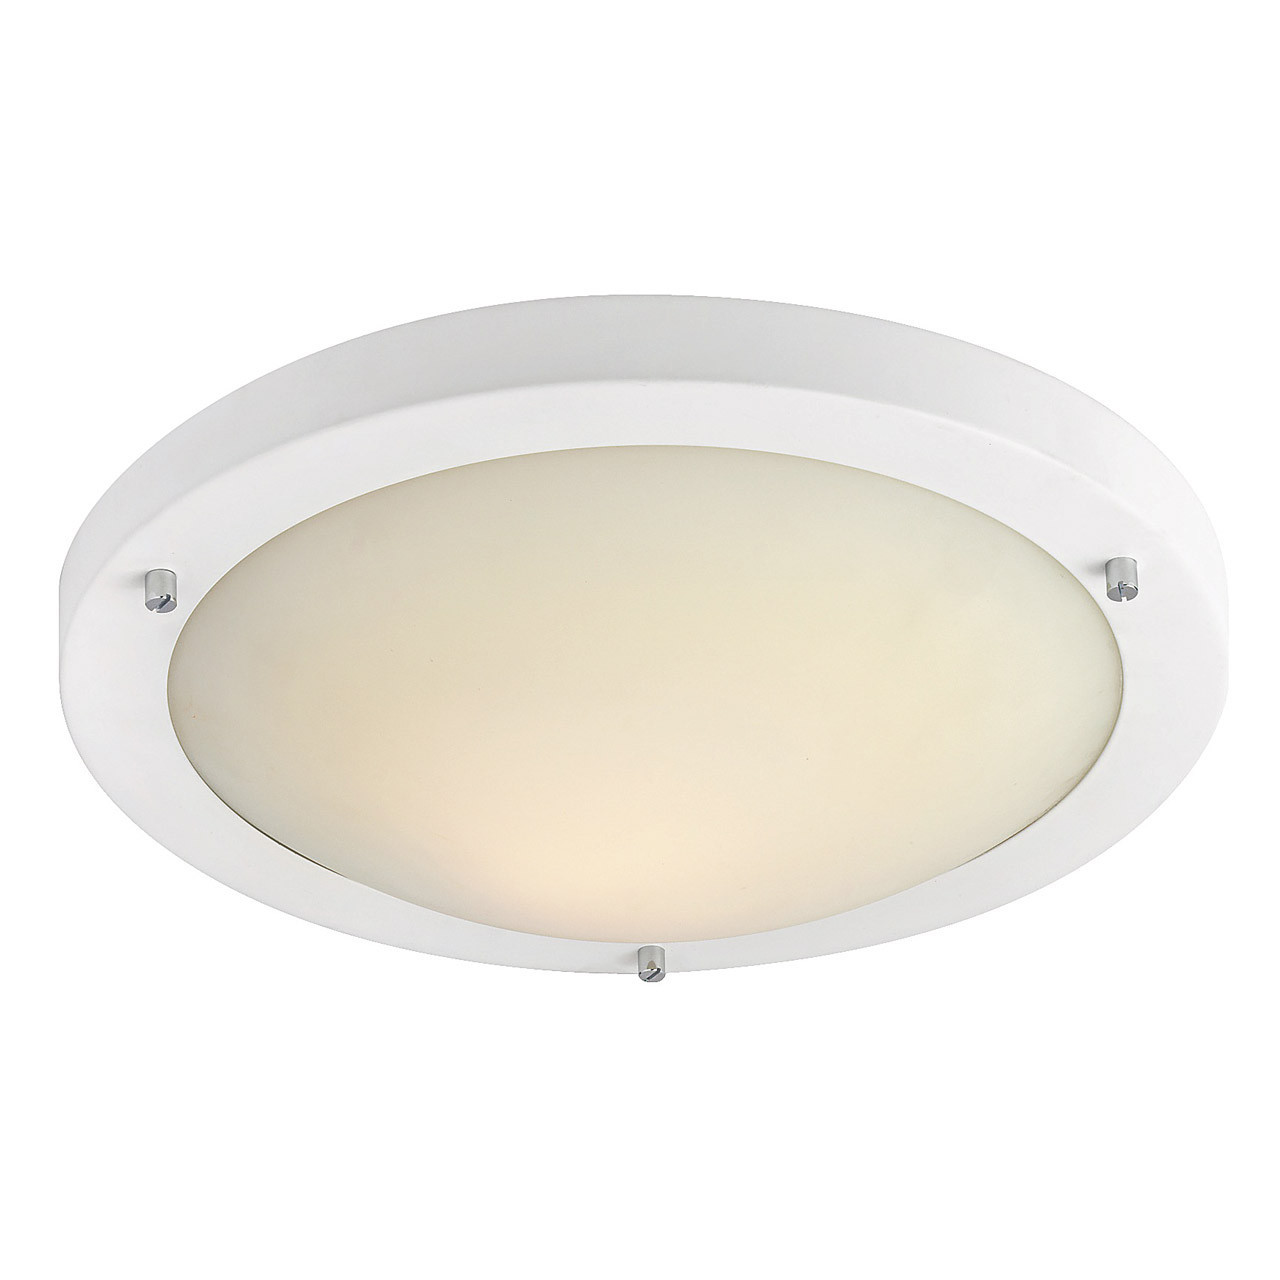 Photos - Chandelier / Lamp FirstLight Rondo LED 31cm Flush Ceiling Light 12W Warm White in Matt White 